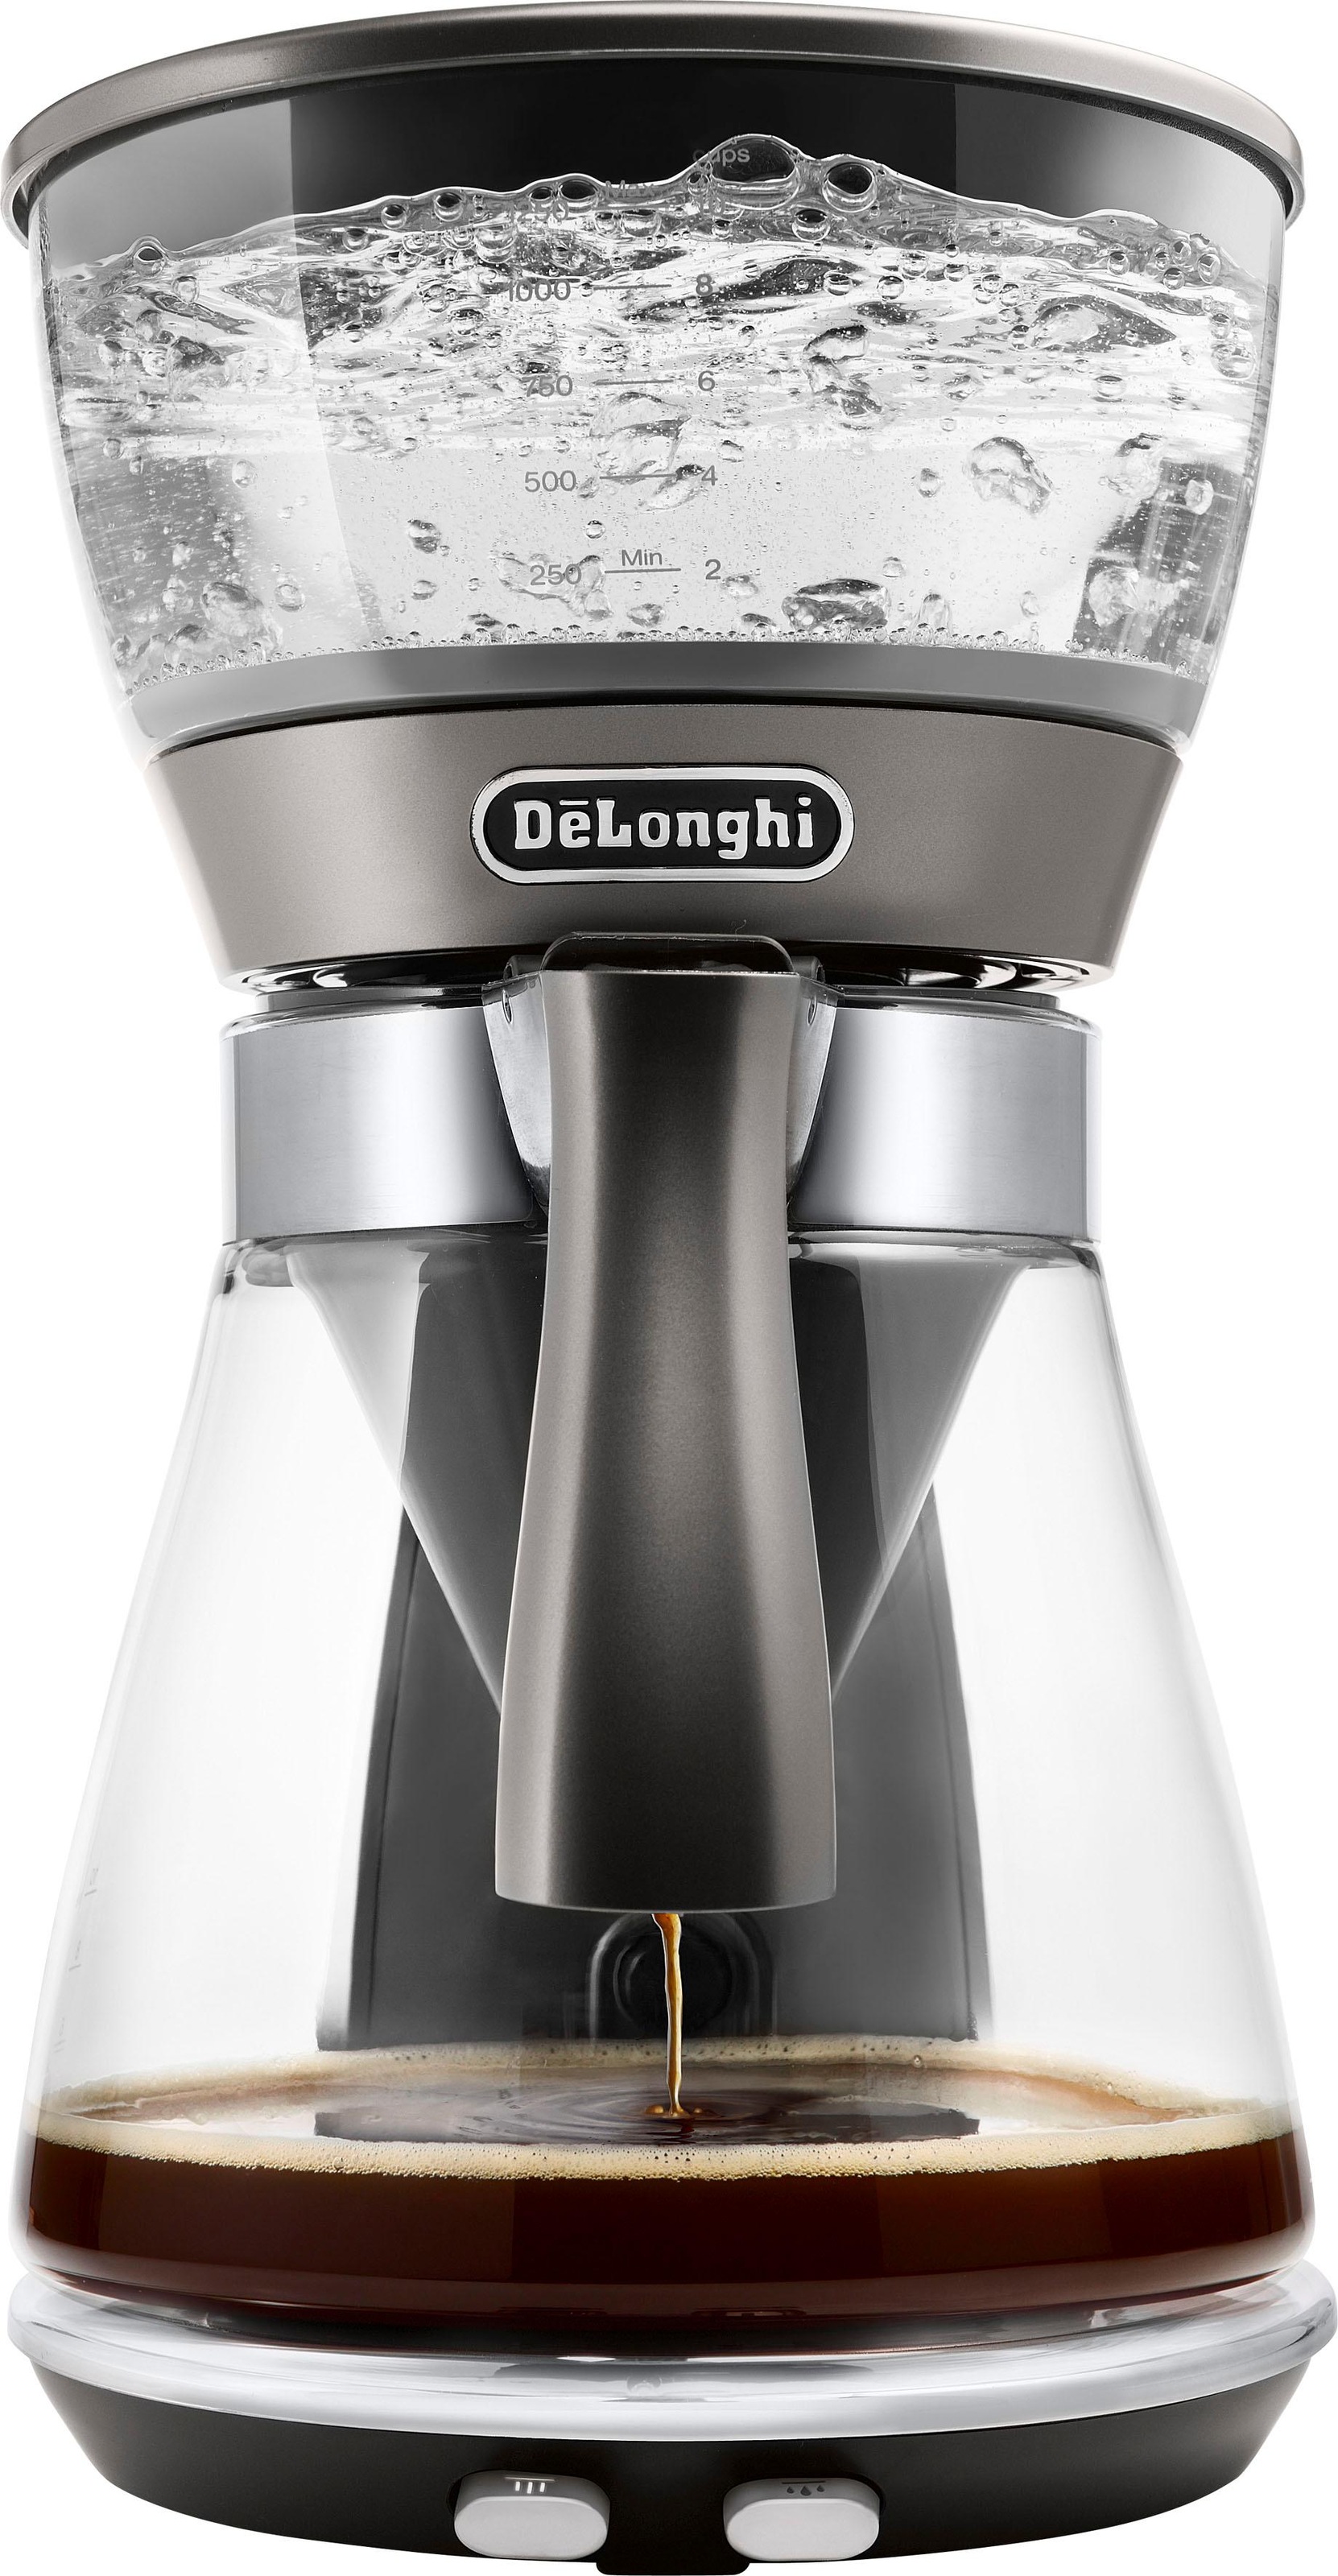 DeLonghi Filterkaffeemaschine "Clessidra ICM 17210", 1,25 l Kaffeekanne, Papierfilter, nach zertifiziertem ECBE Standard